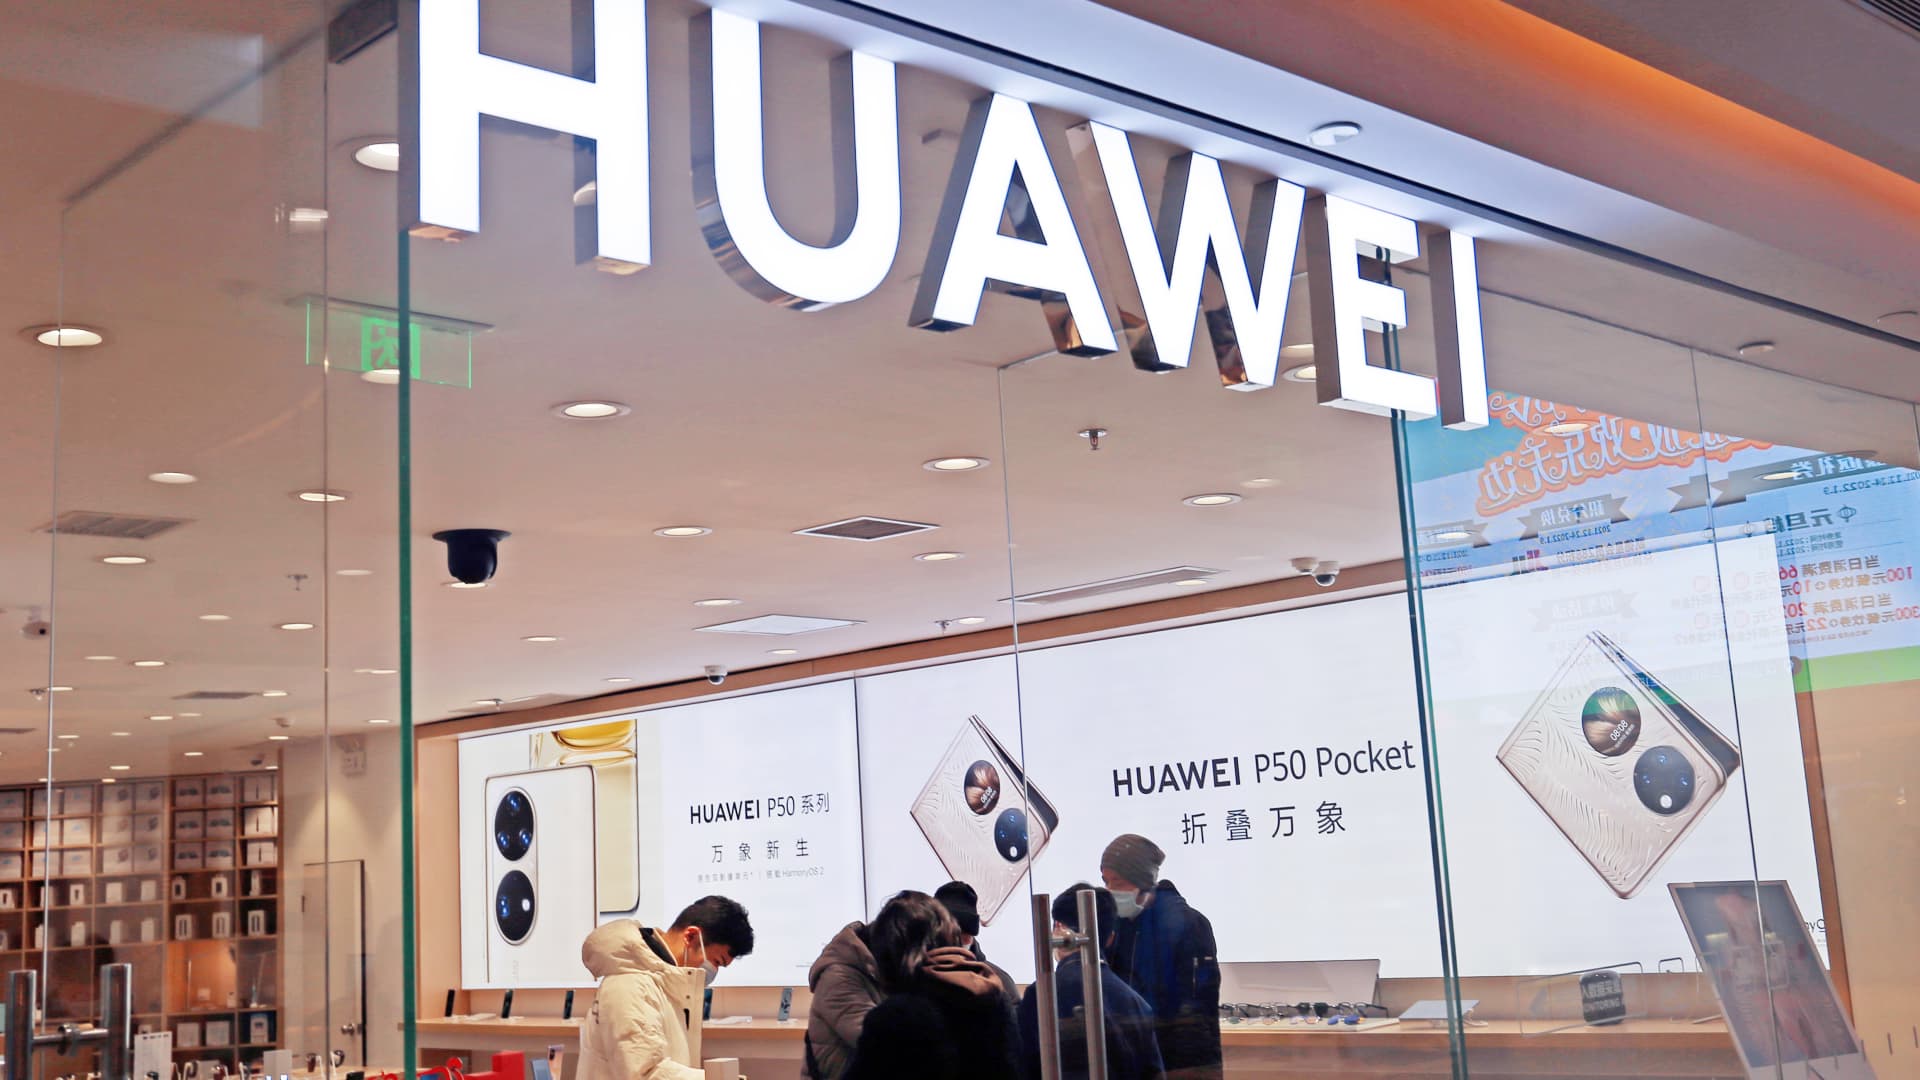 Huawei’s omzet daalt in het eerste kwartaal als de verkoop van smartphones daalt